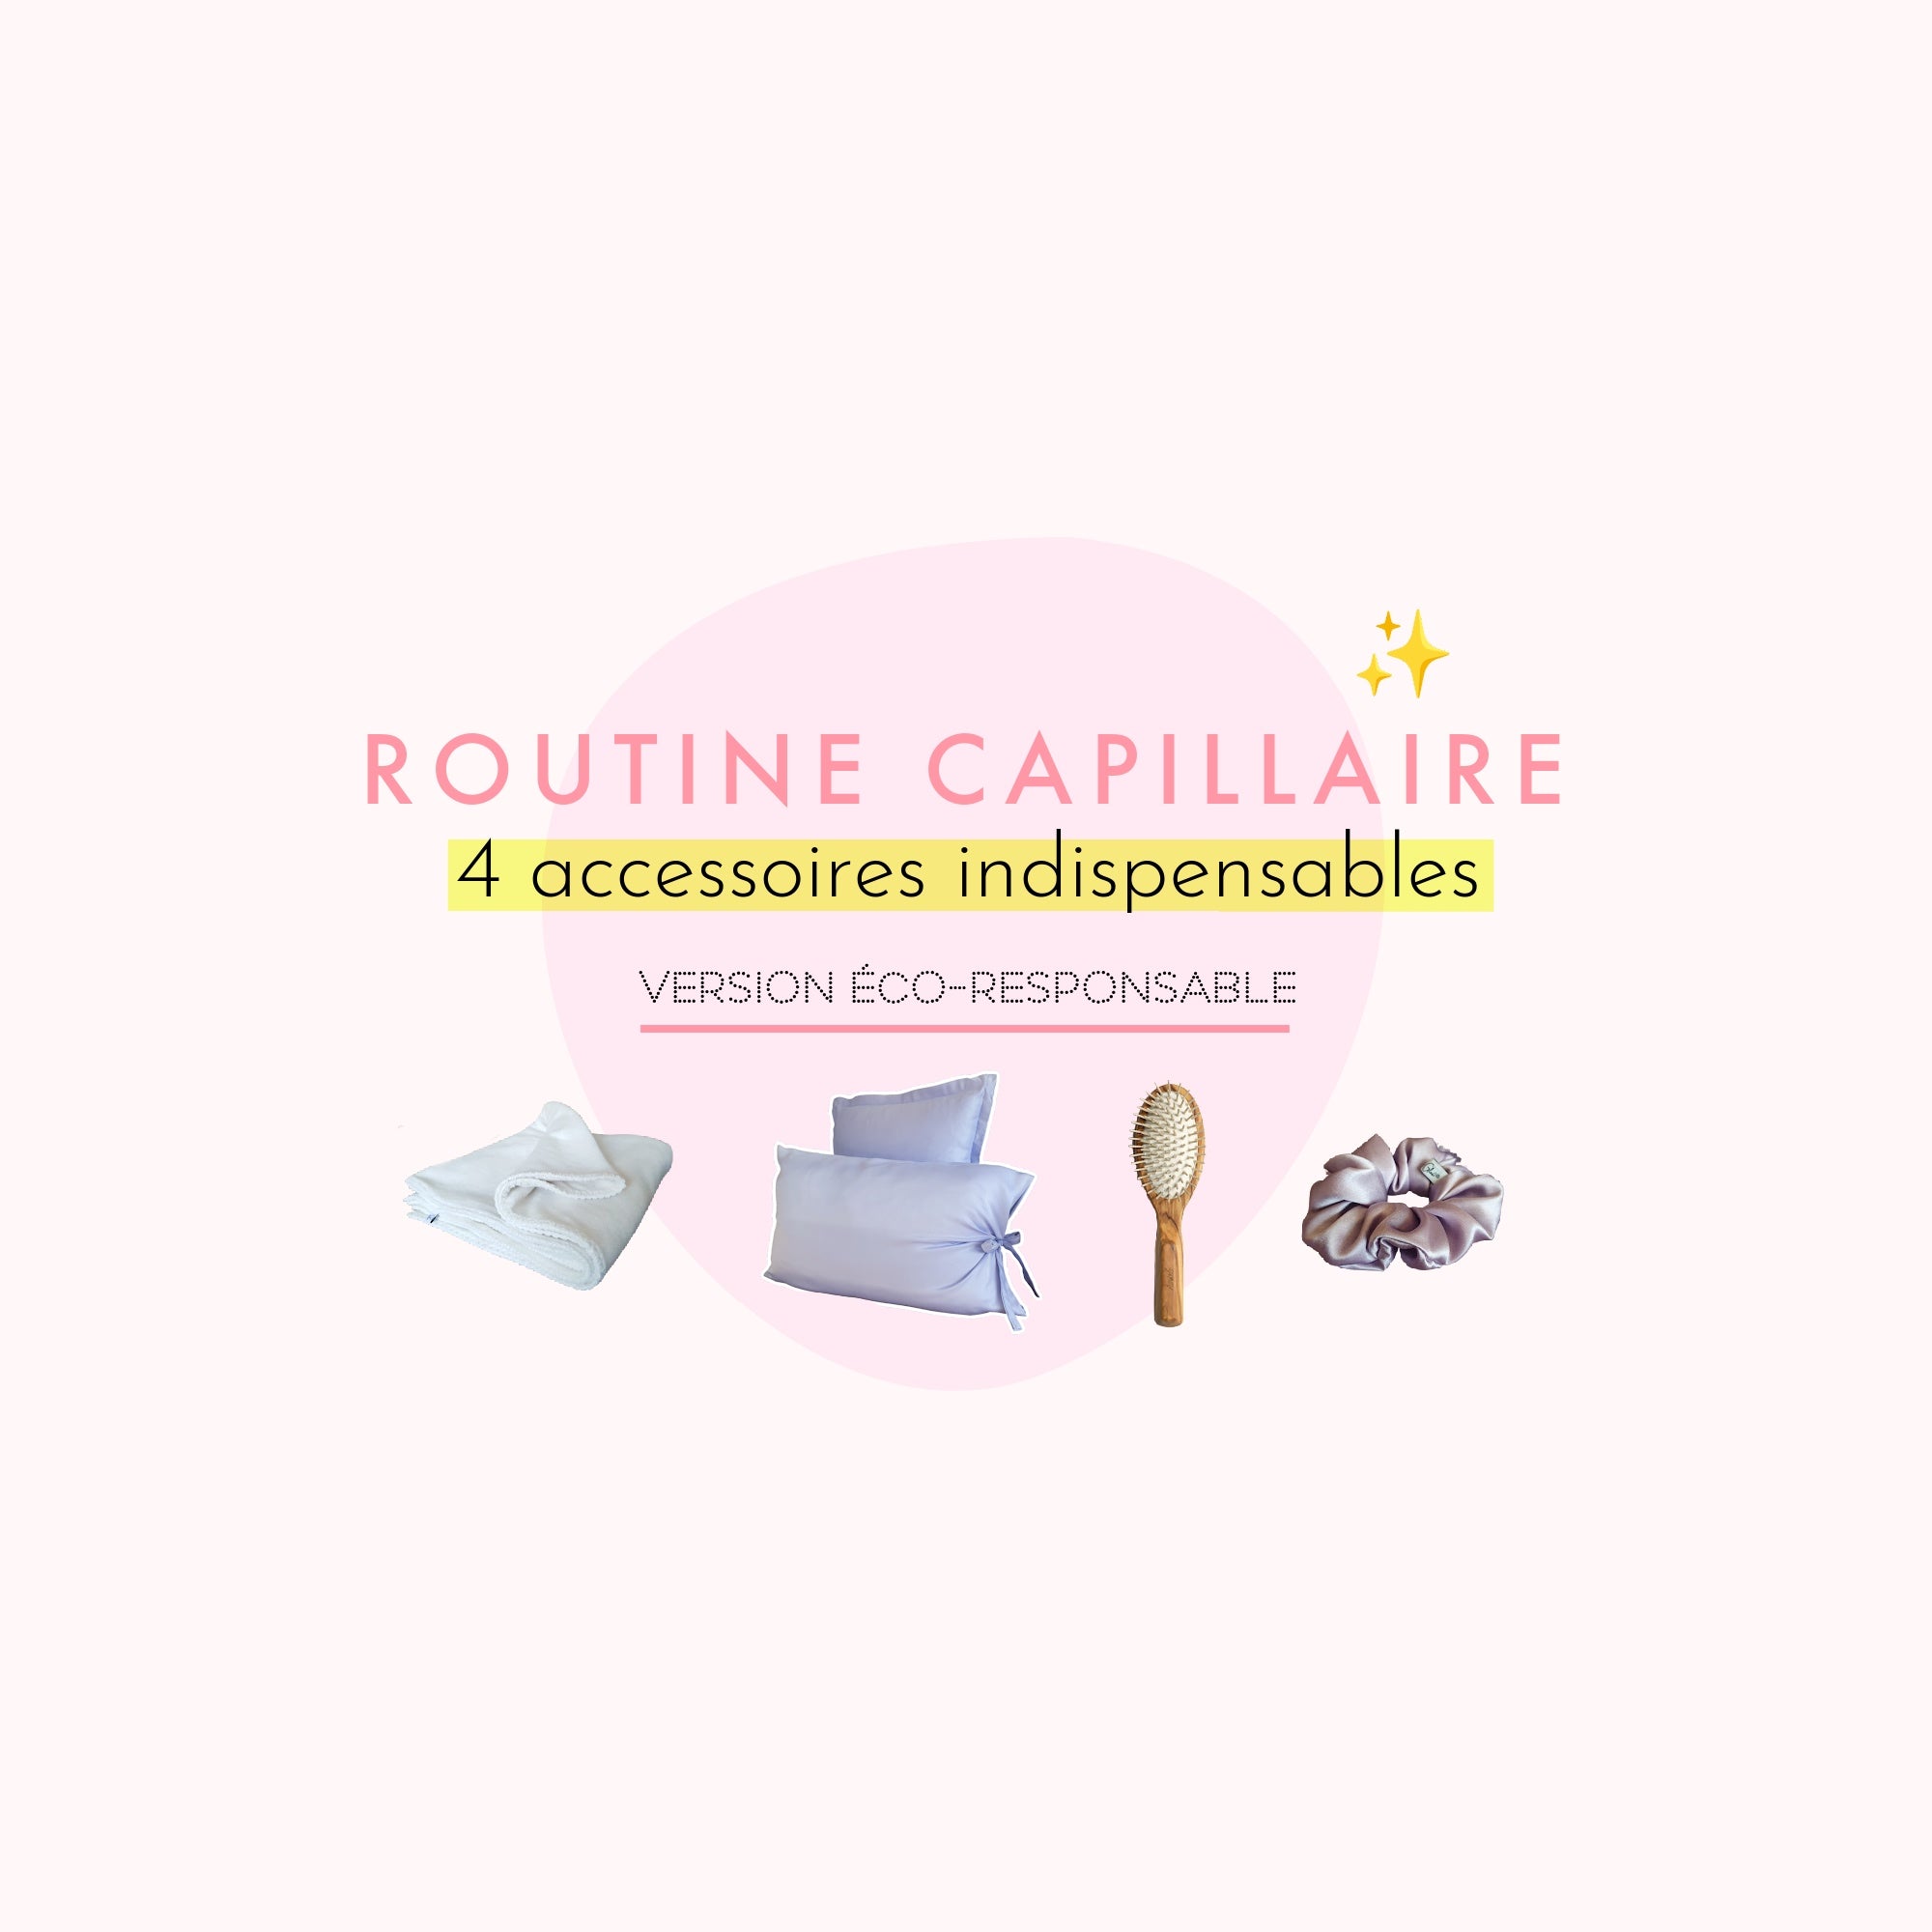 Routine capillaire : 4 accessoires indispensables - version éco-responsable ! 💚